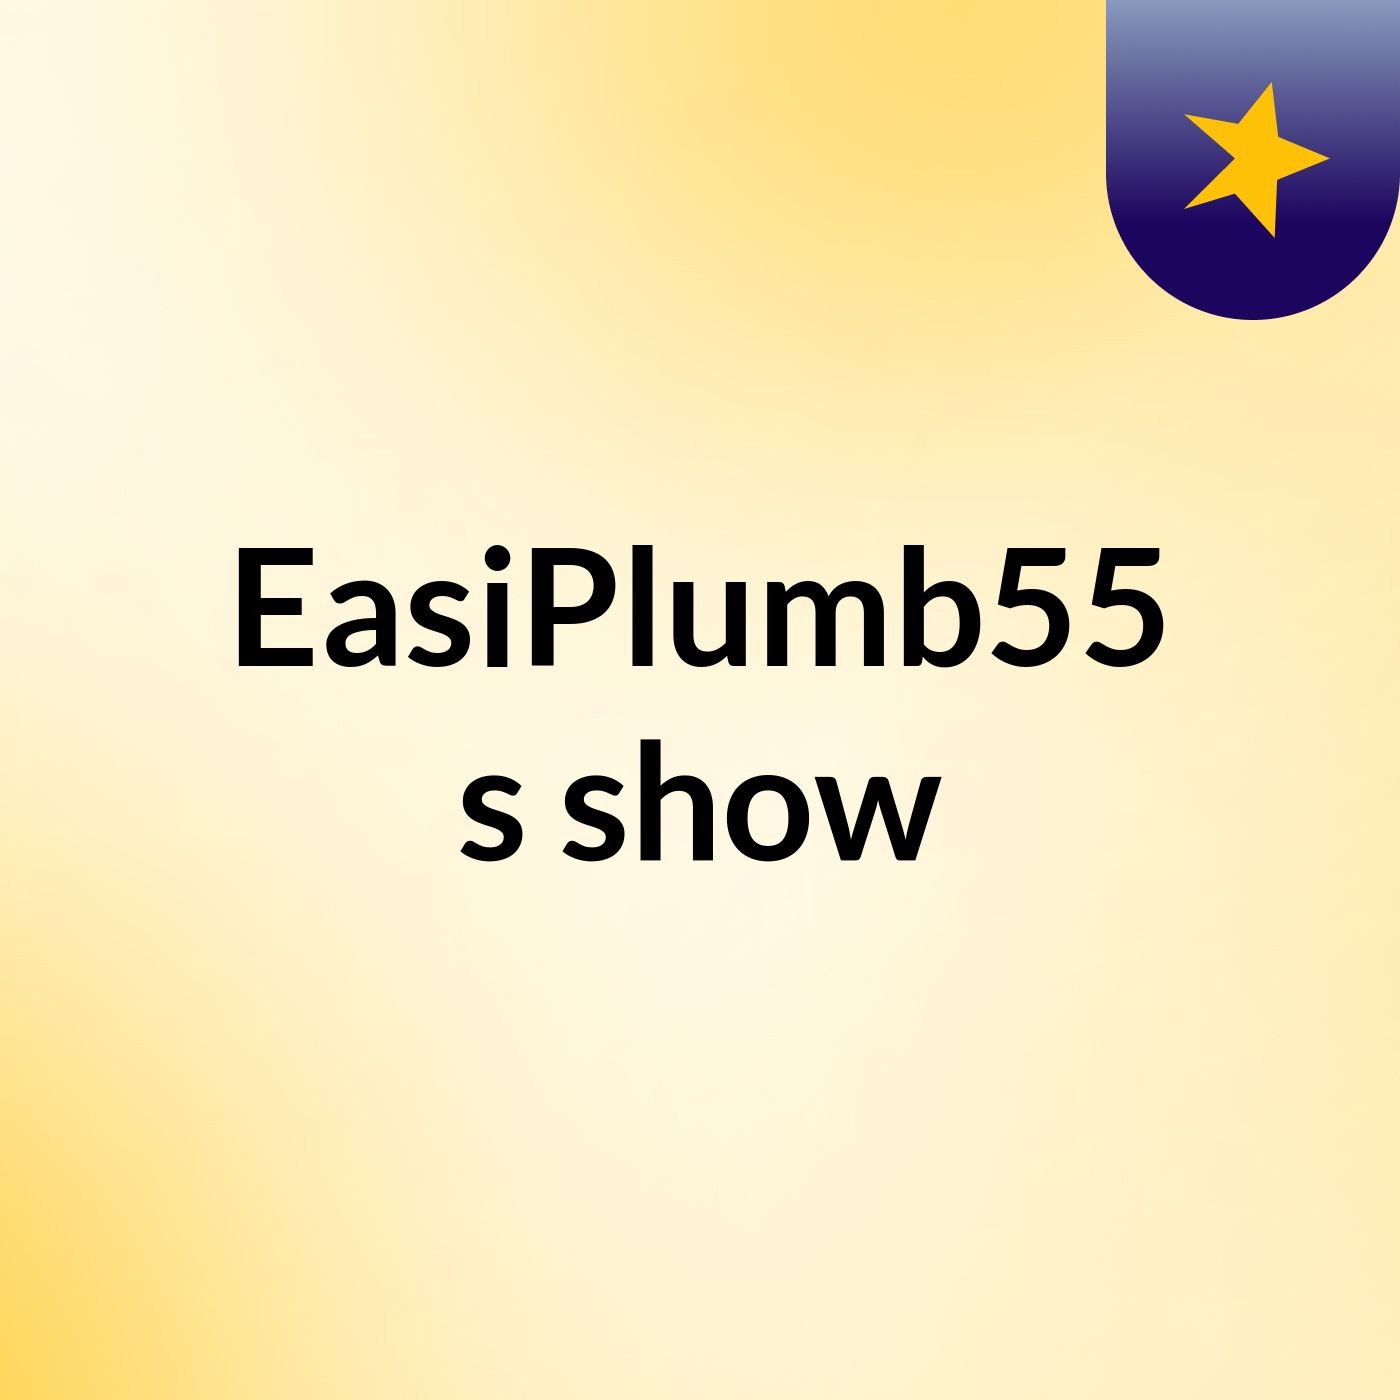 EasiPlumb55's show